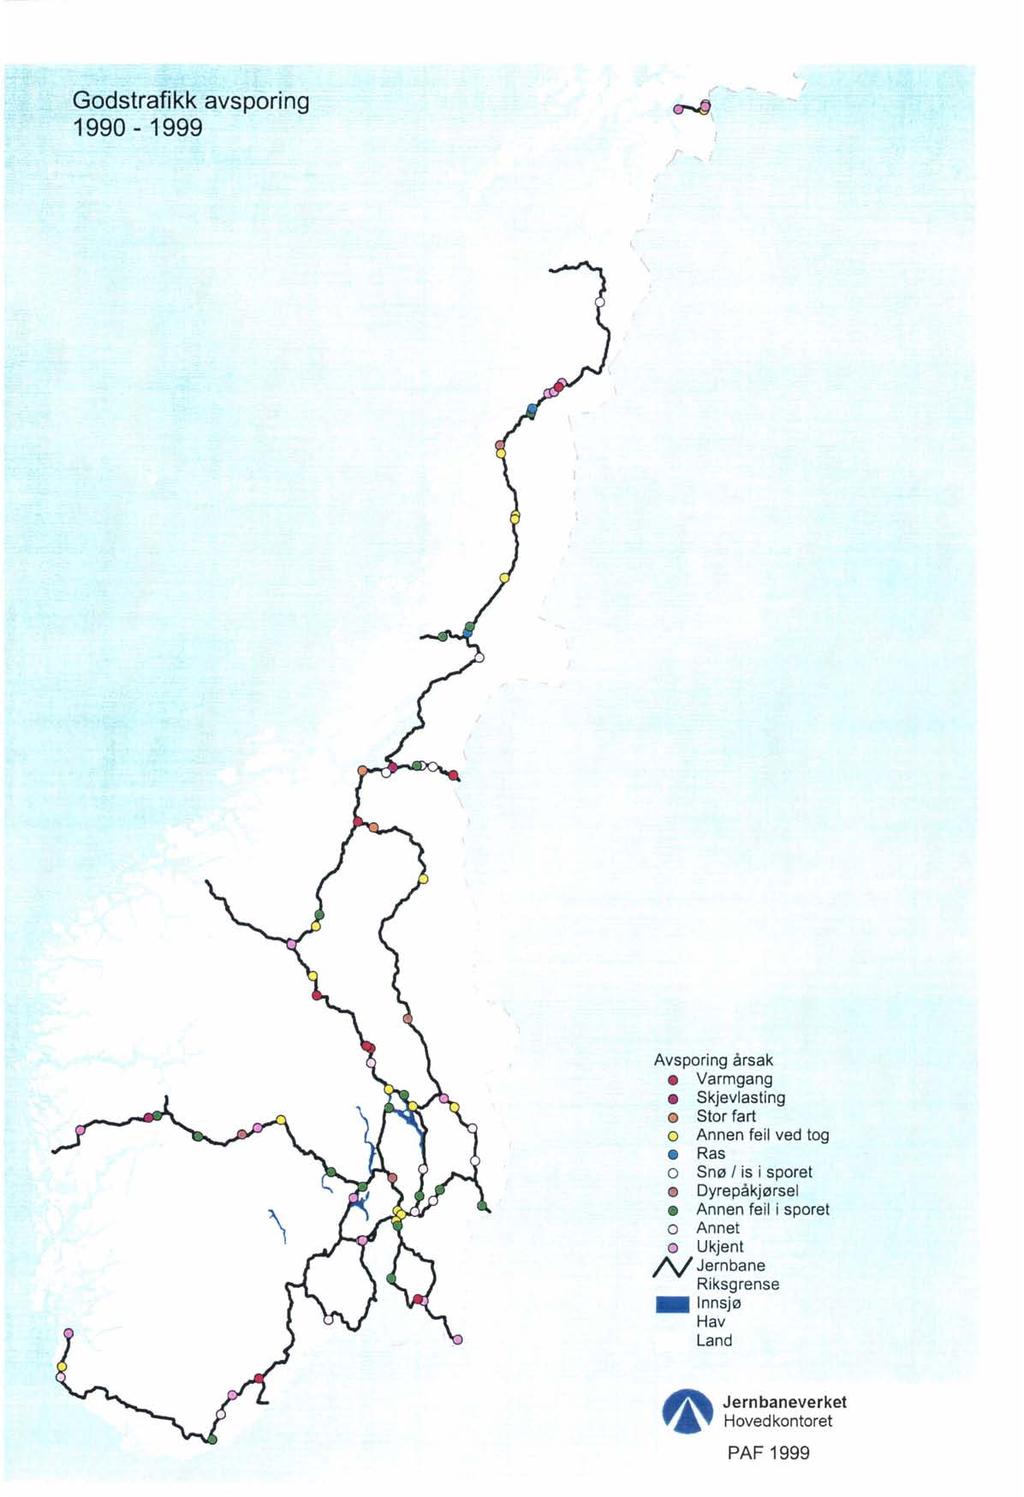 Godstrafikk avsporing 1990-1999 ;- "i <.